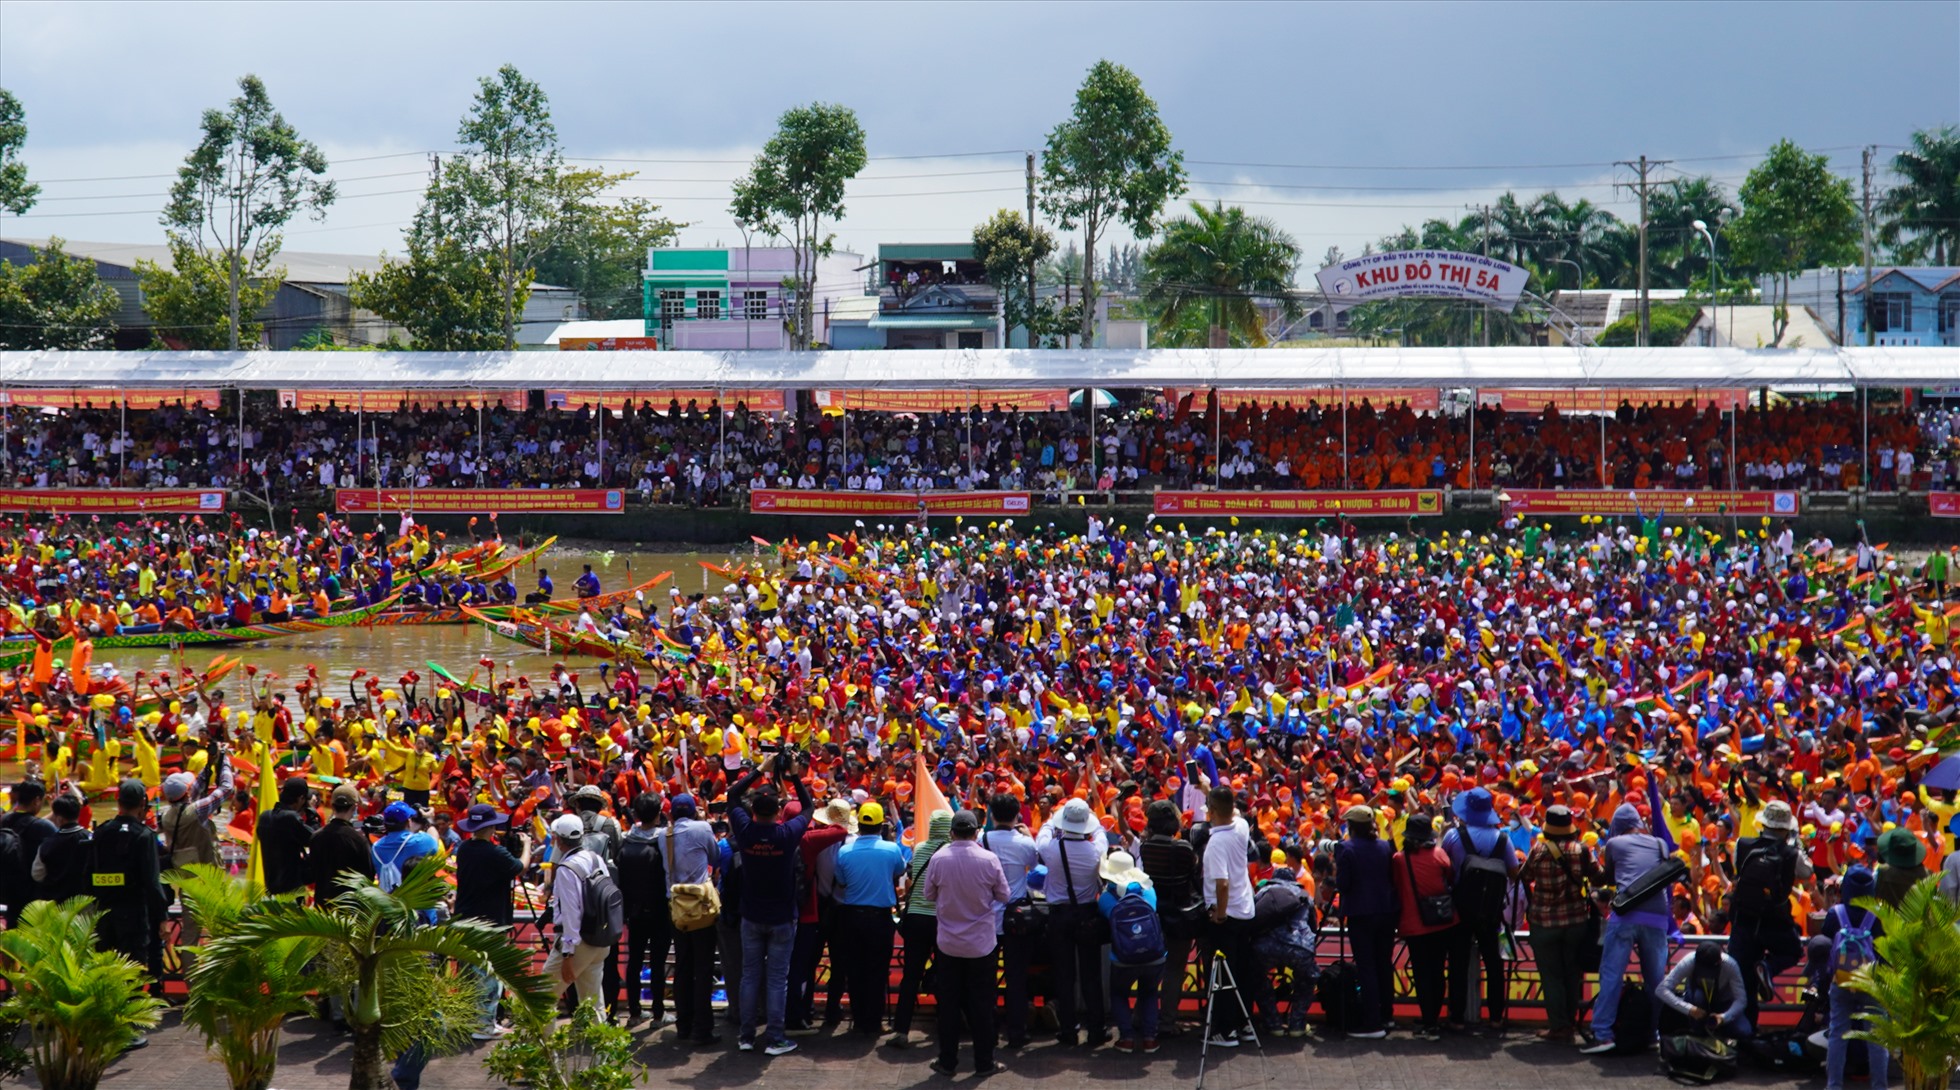 Trưa ngày 7.11, tại khán đài đua ghe Ngo tỉnh Sóc Trăng, Lễ hội đua nghe Ngo khu vực Đồng bằng sông Cửu Long chính thức diễn ra tại dòng sông Maspero.